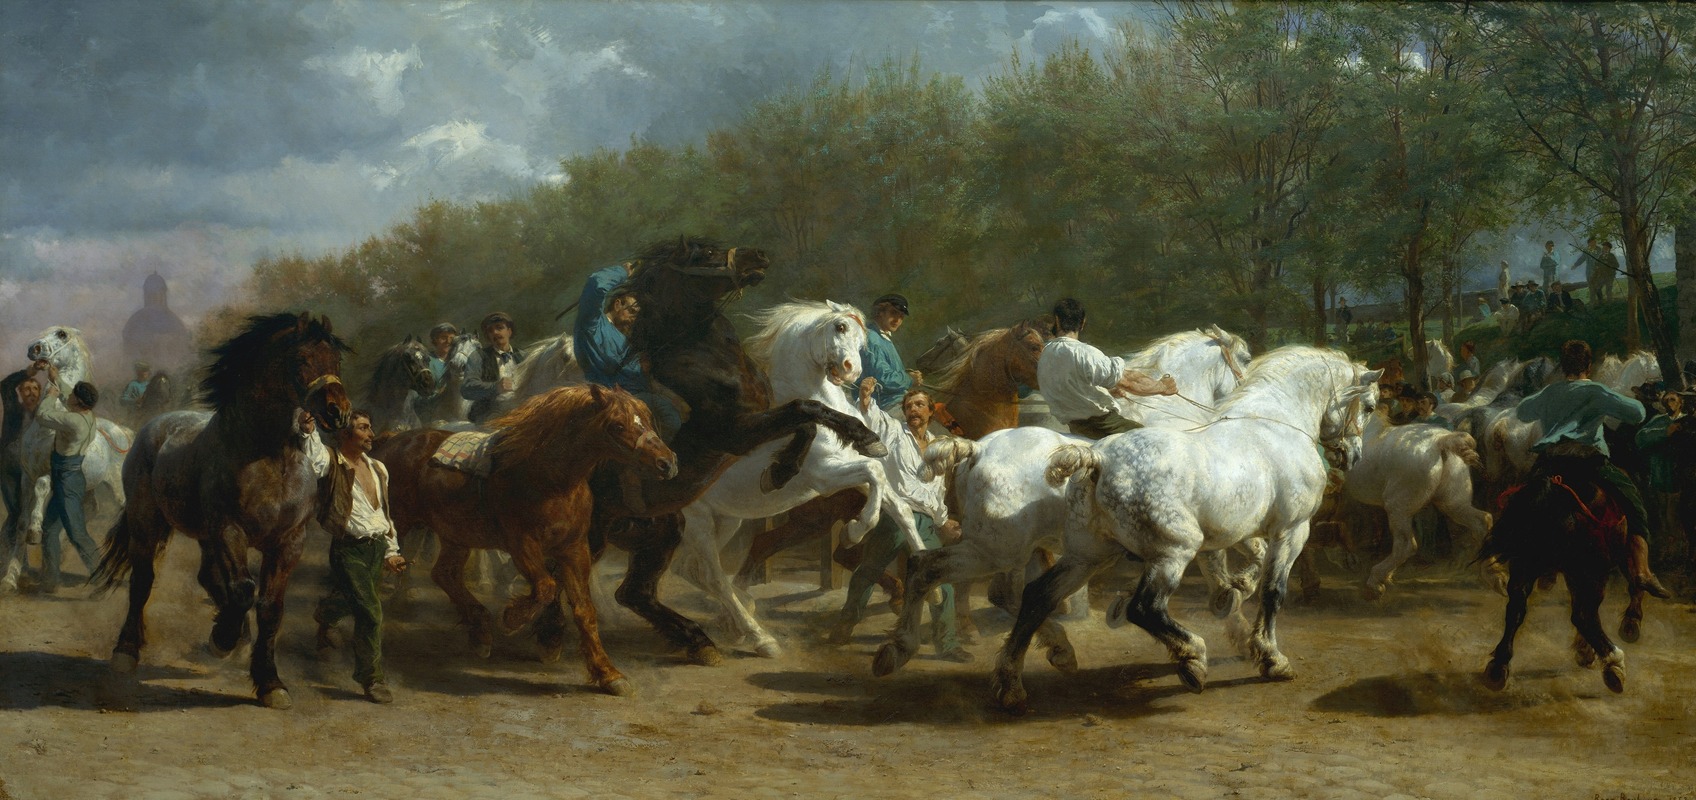 Rosa Bonheur - The Horse Fair